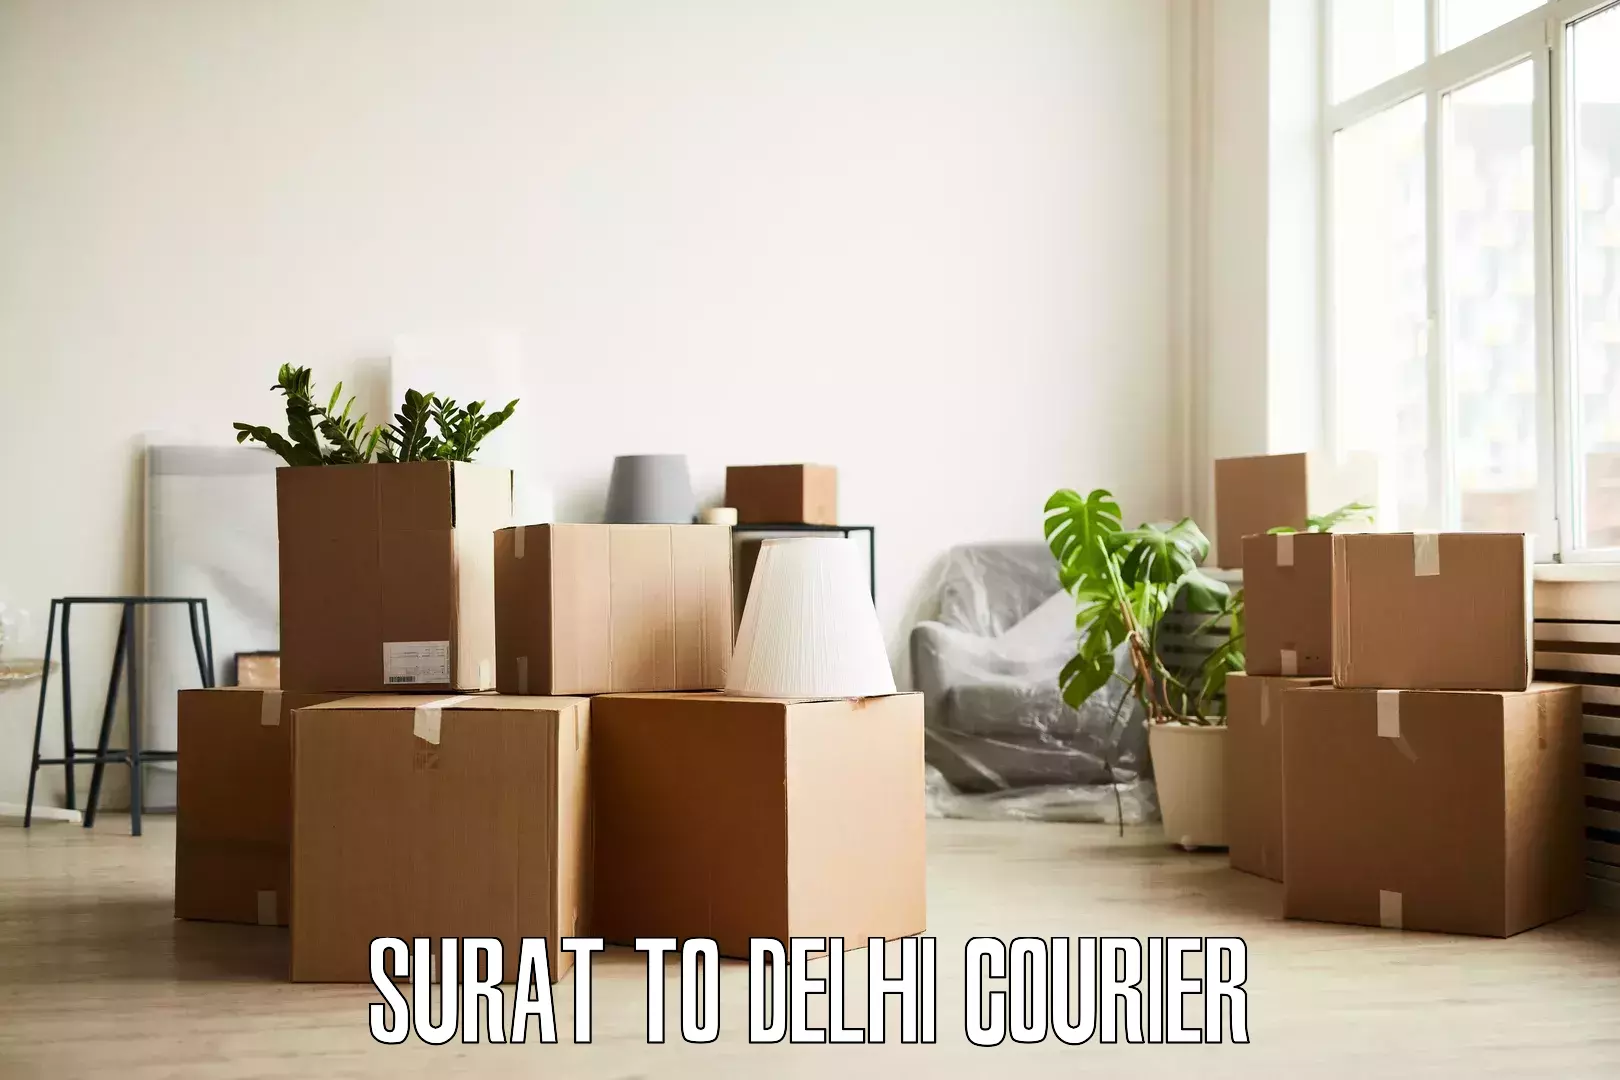 Furniture delivery service in Surat to Delhi